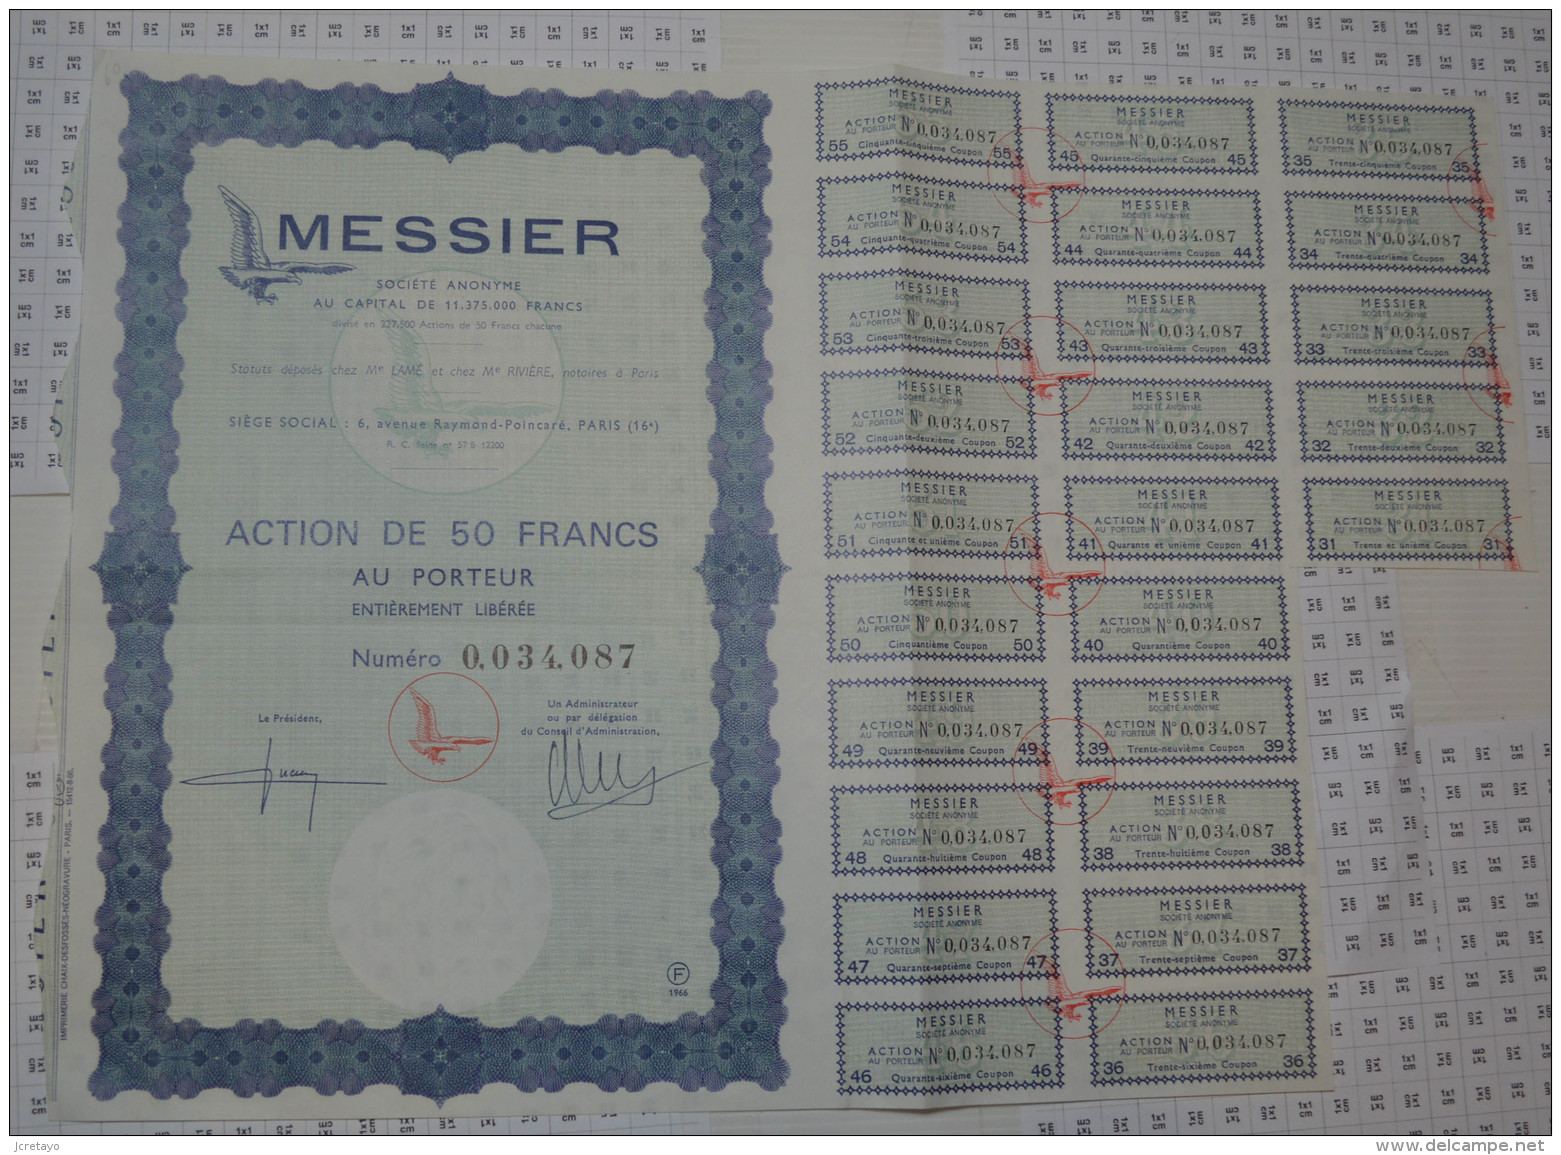 Messier, Aeronautique A Paris - Aviation